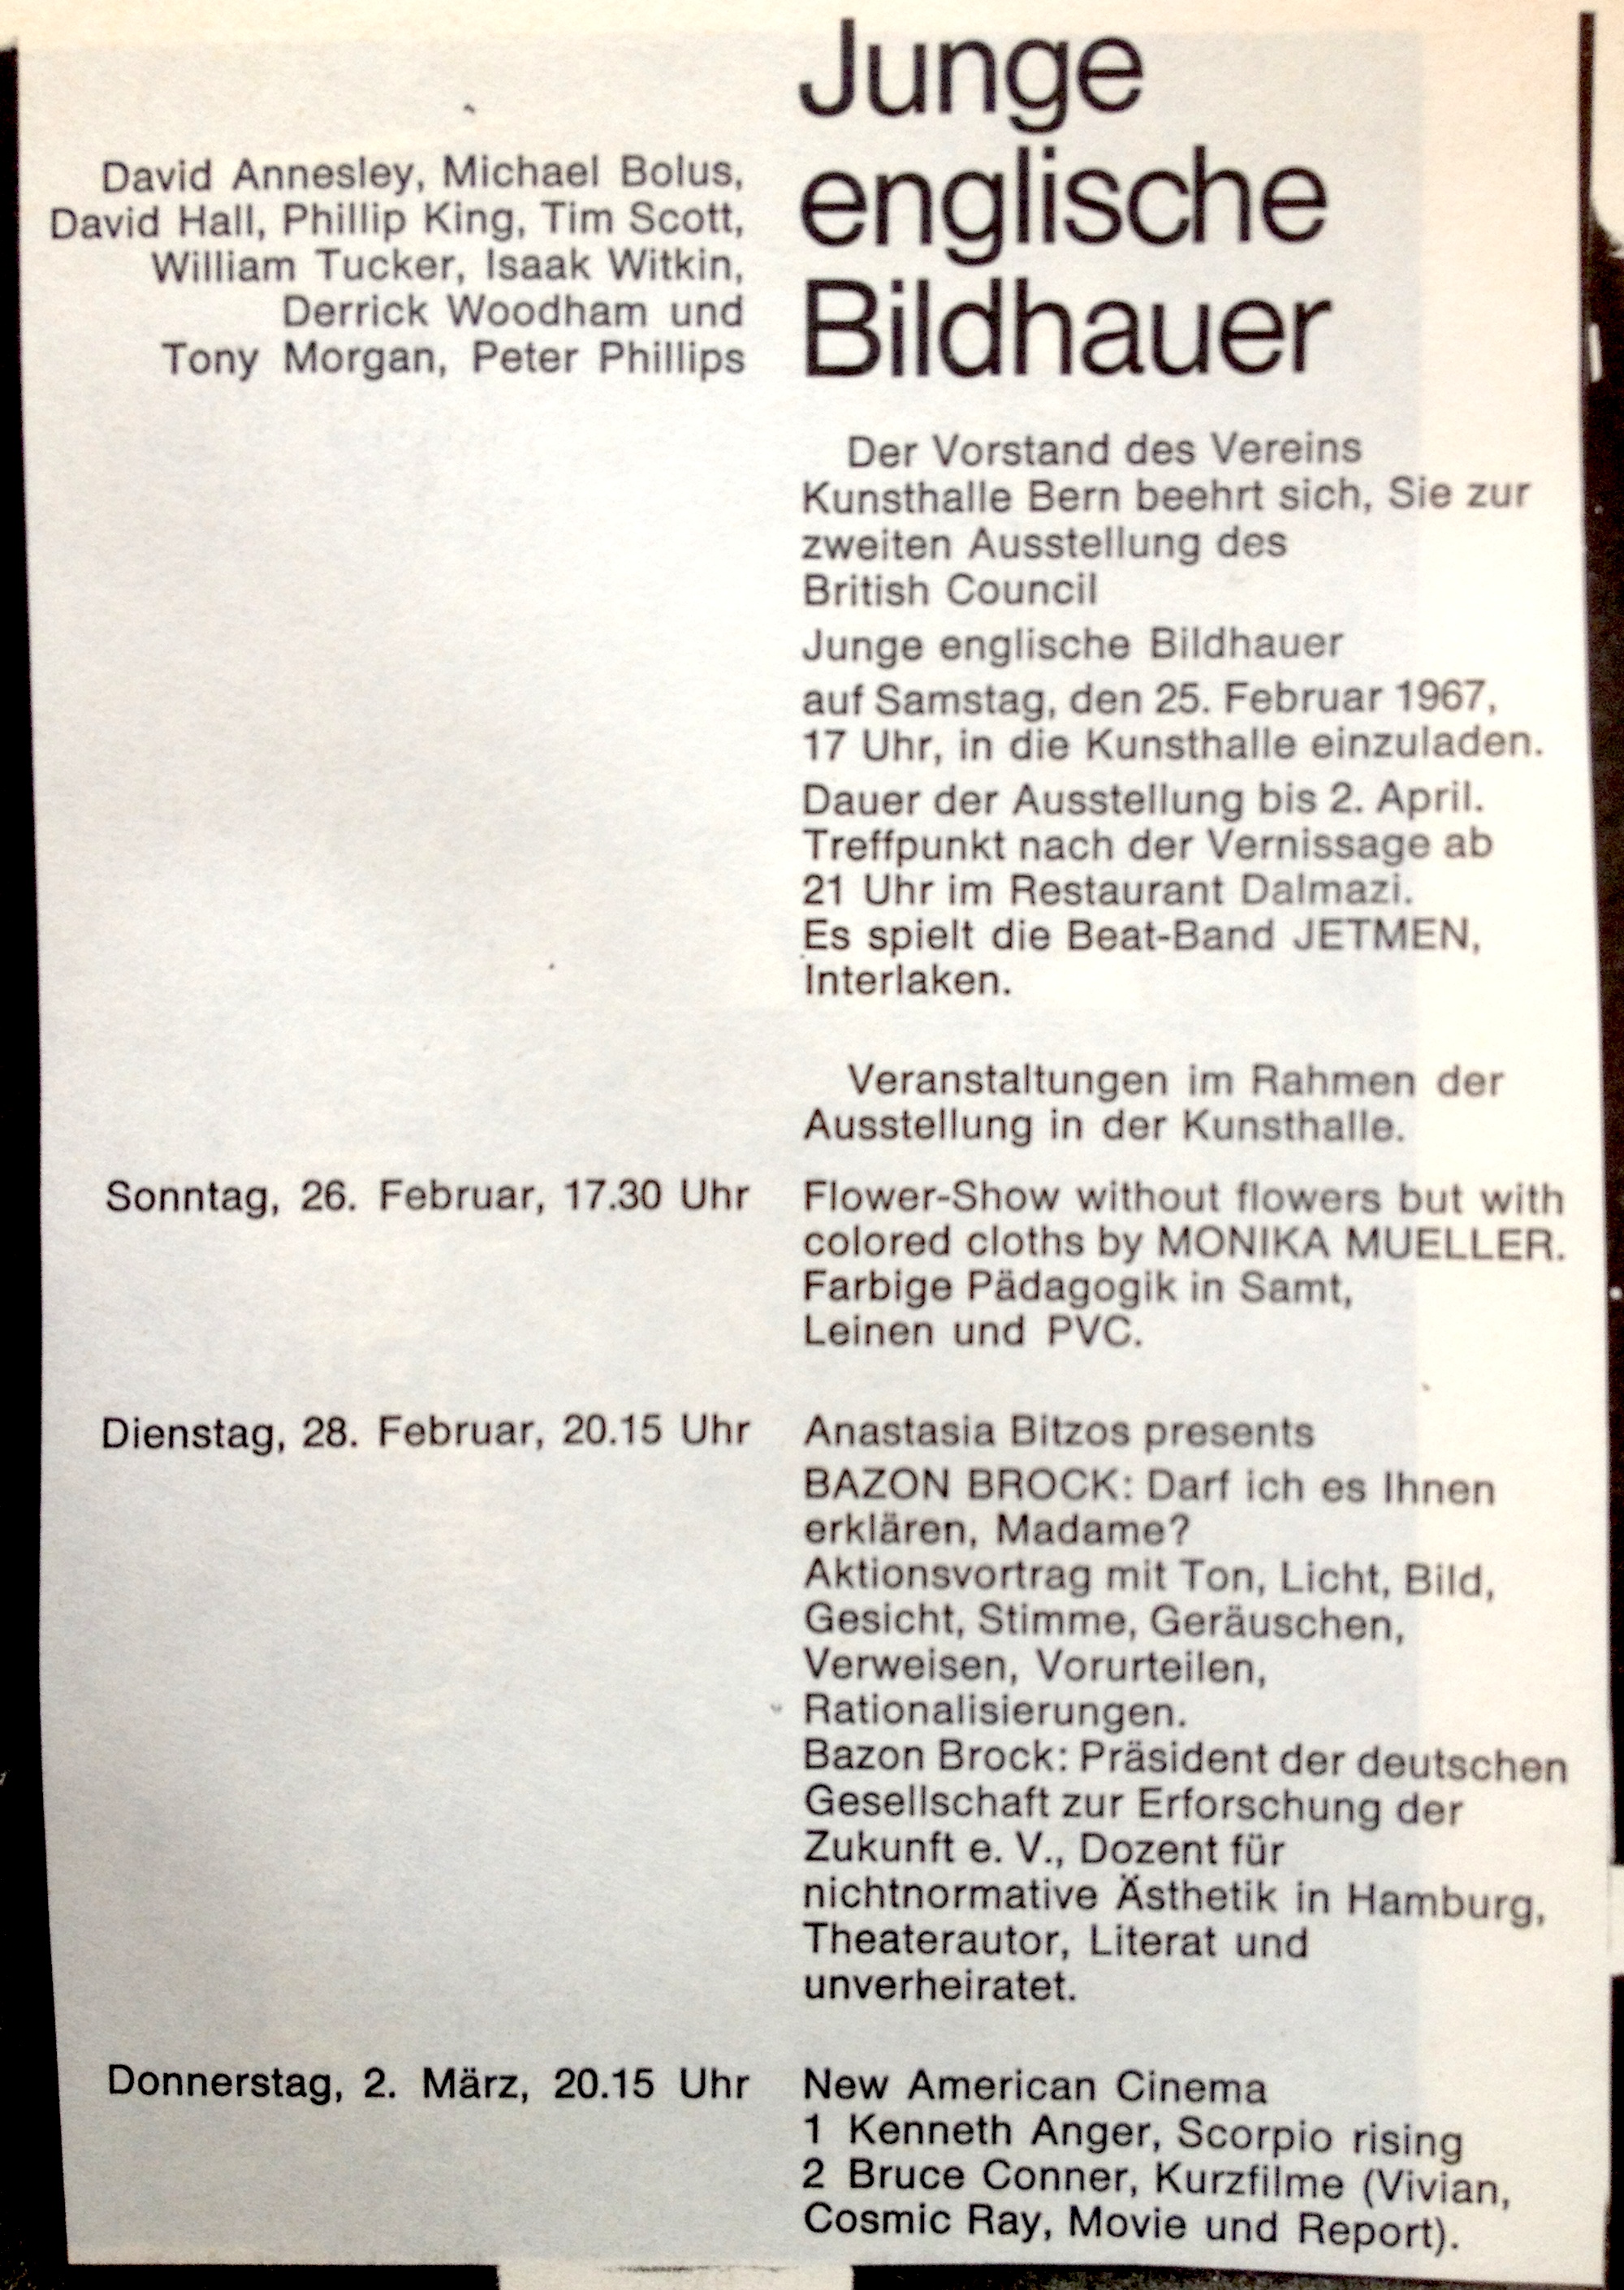 Junge englische Bildhauer, Bild: Ausstellung Kunsthalle Bern, 25.02.-02.04.1967.